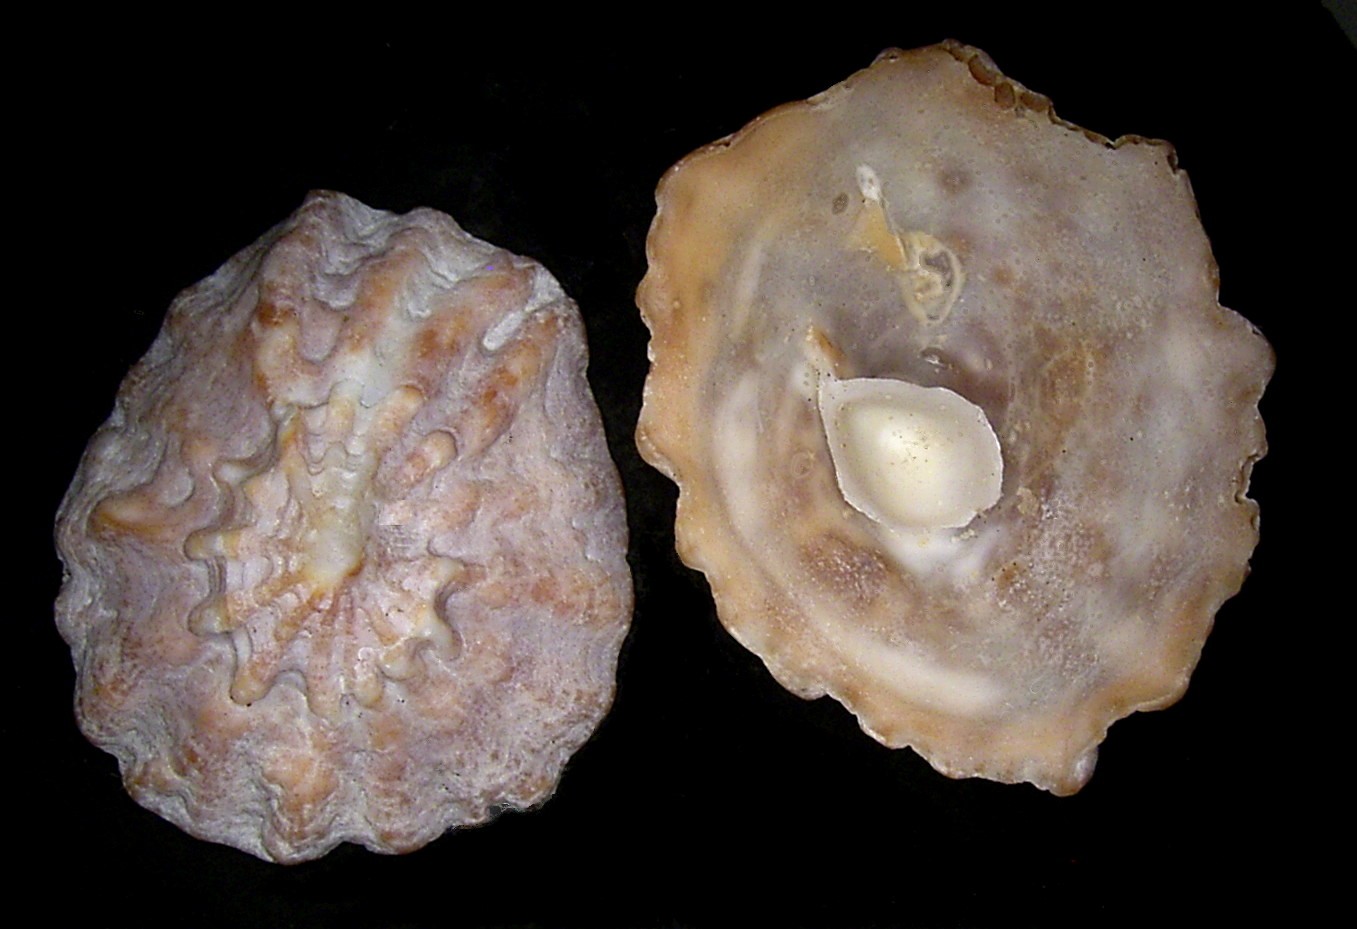 Cup-and-saucer snails (Crucibulum)